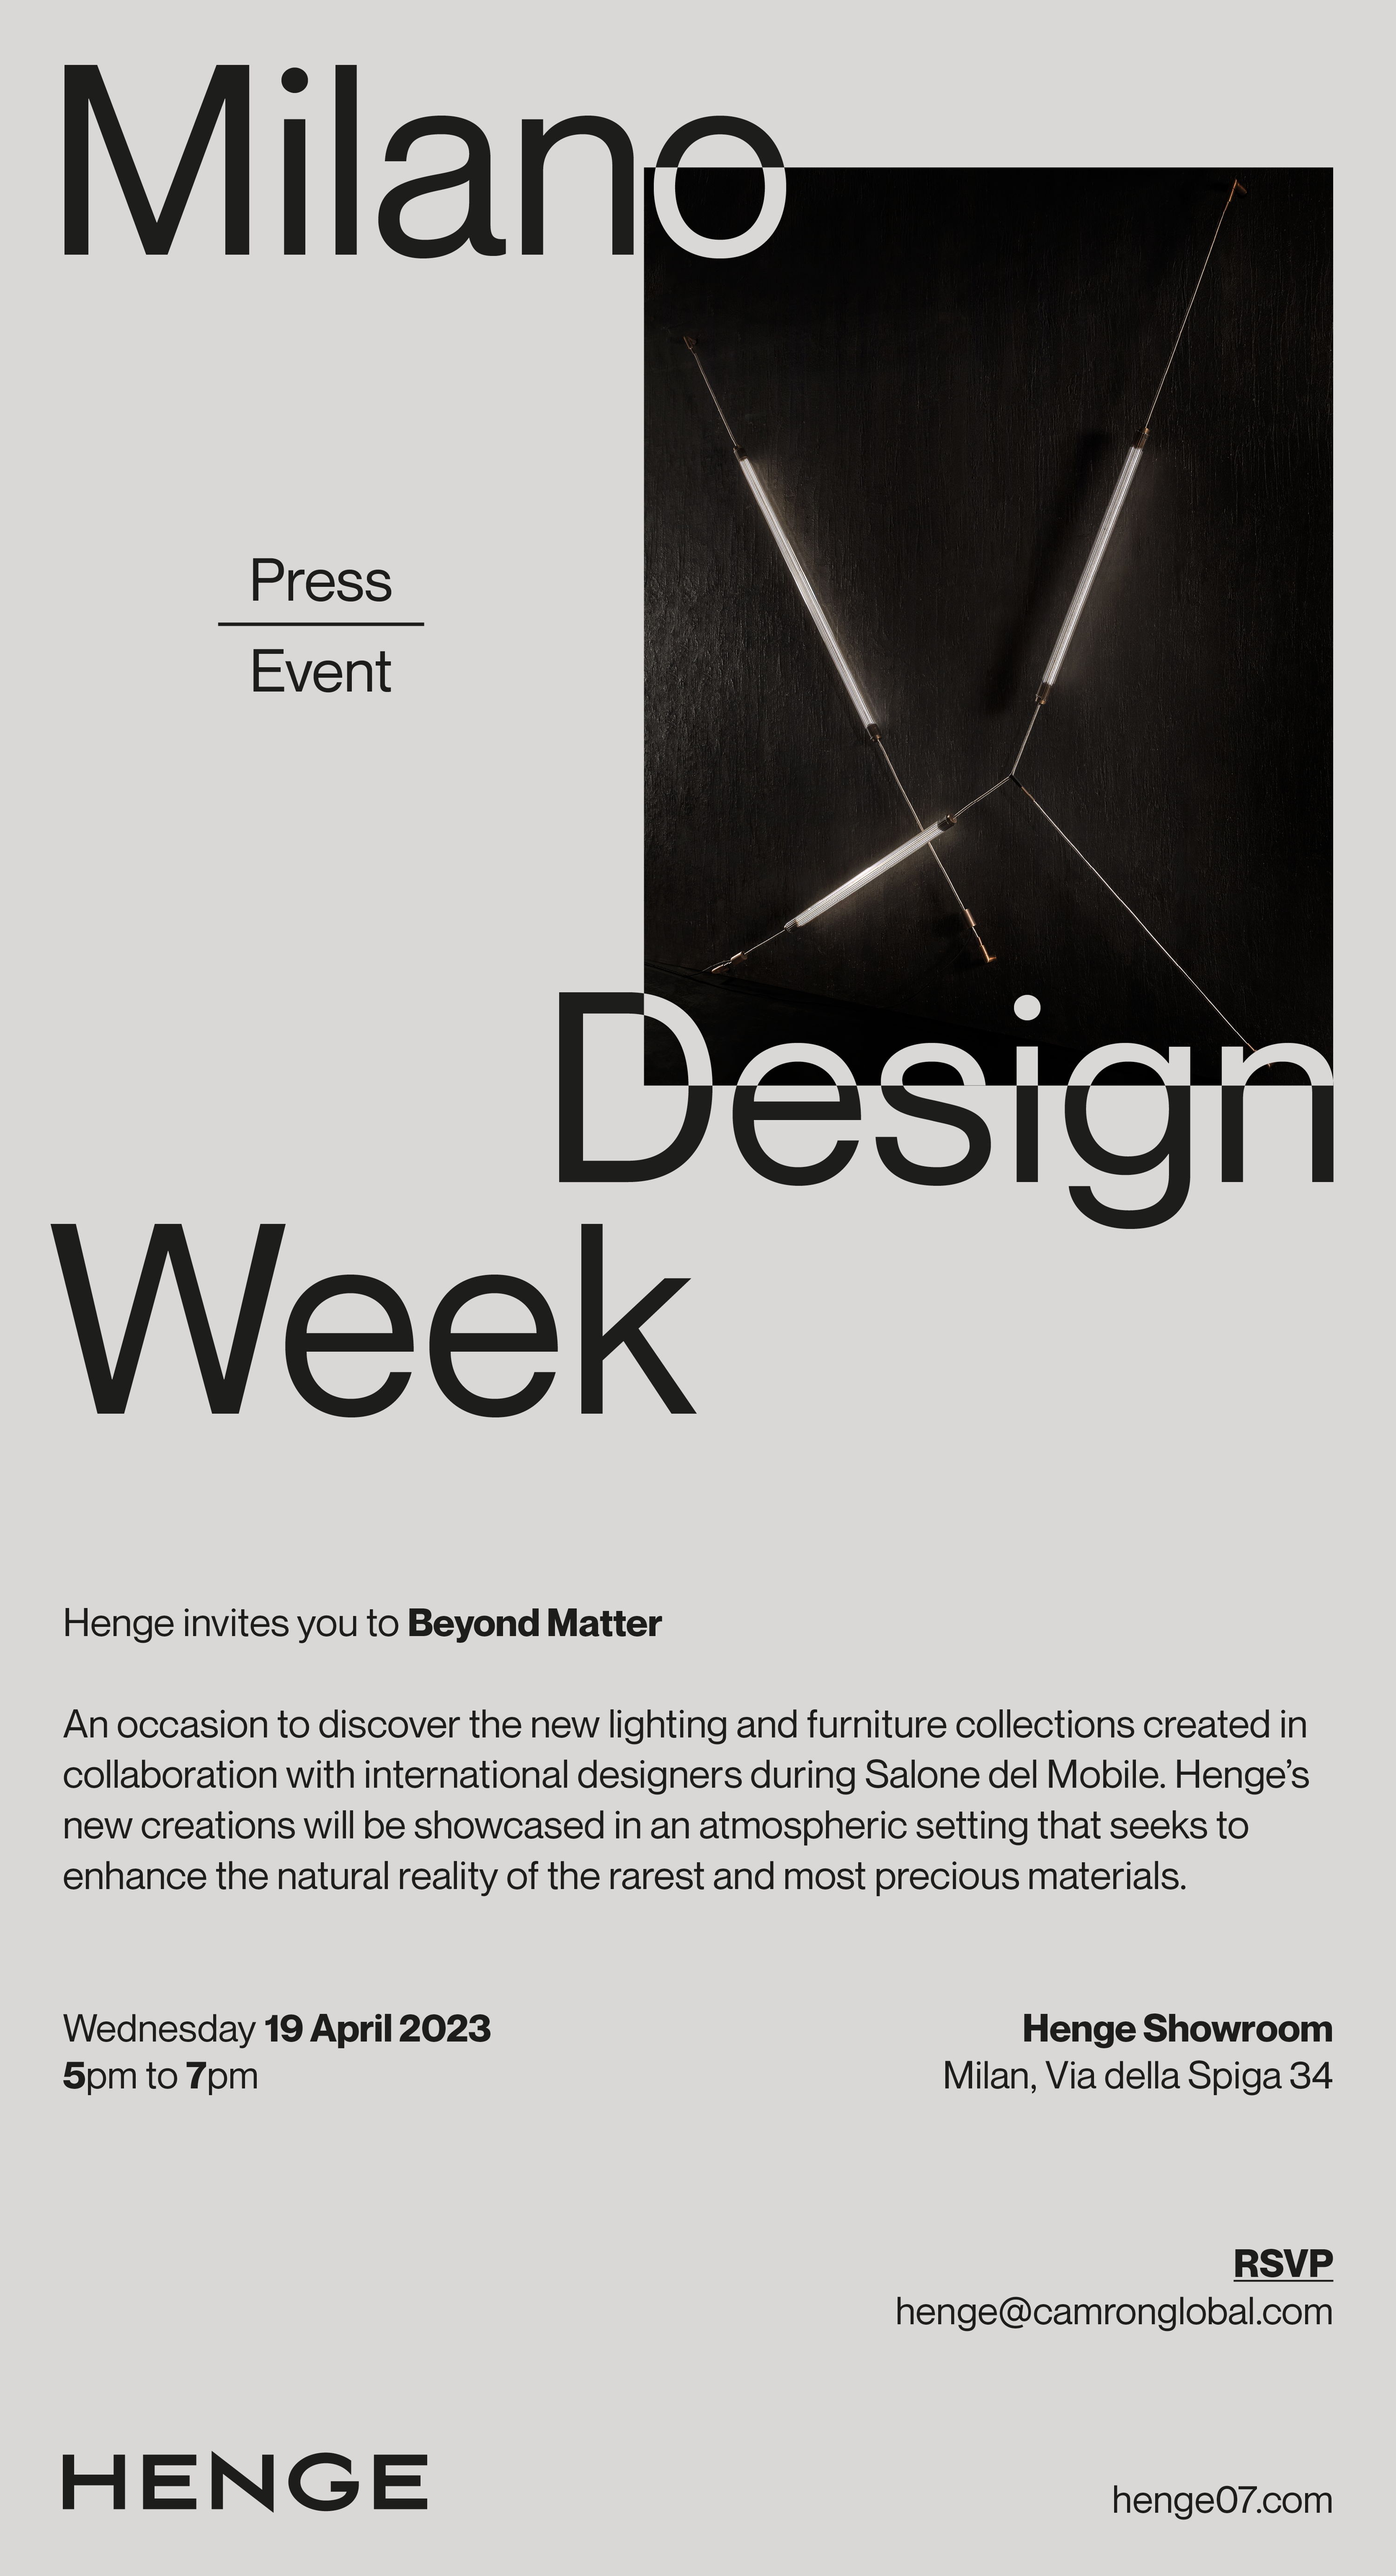 Henge Press Preview at Milan Design Week 2023